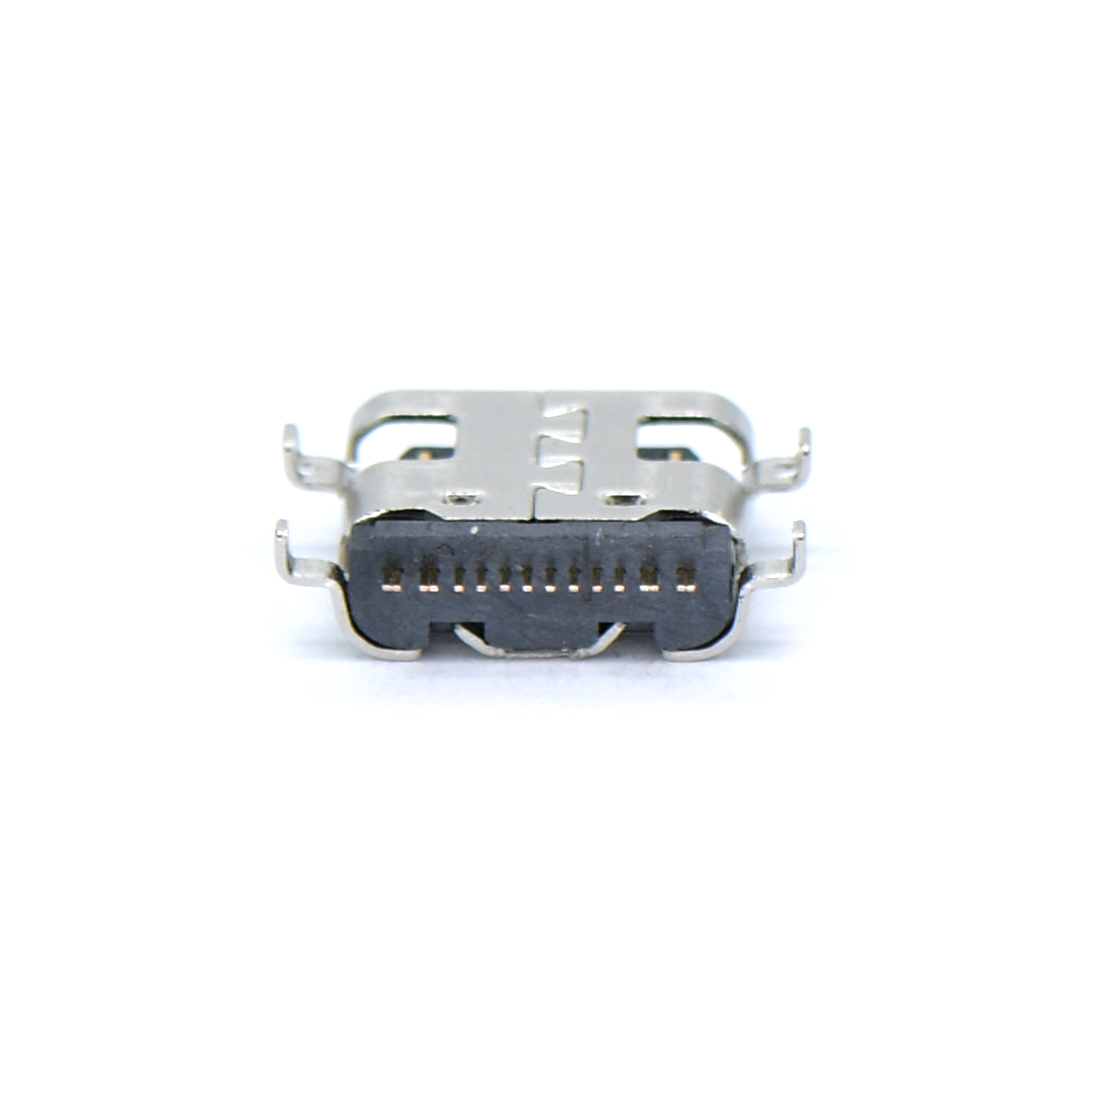 USB连接器Type-C 16P/F SMT 沉板式2.1mm 外壳四脚插板 L=6.5mm 无弹